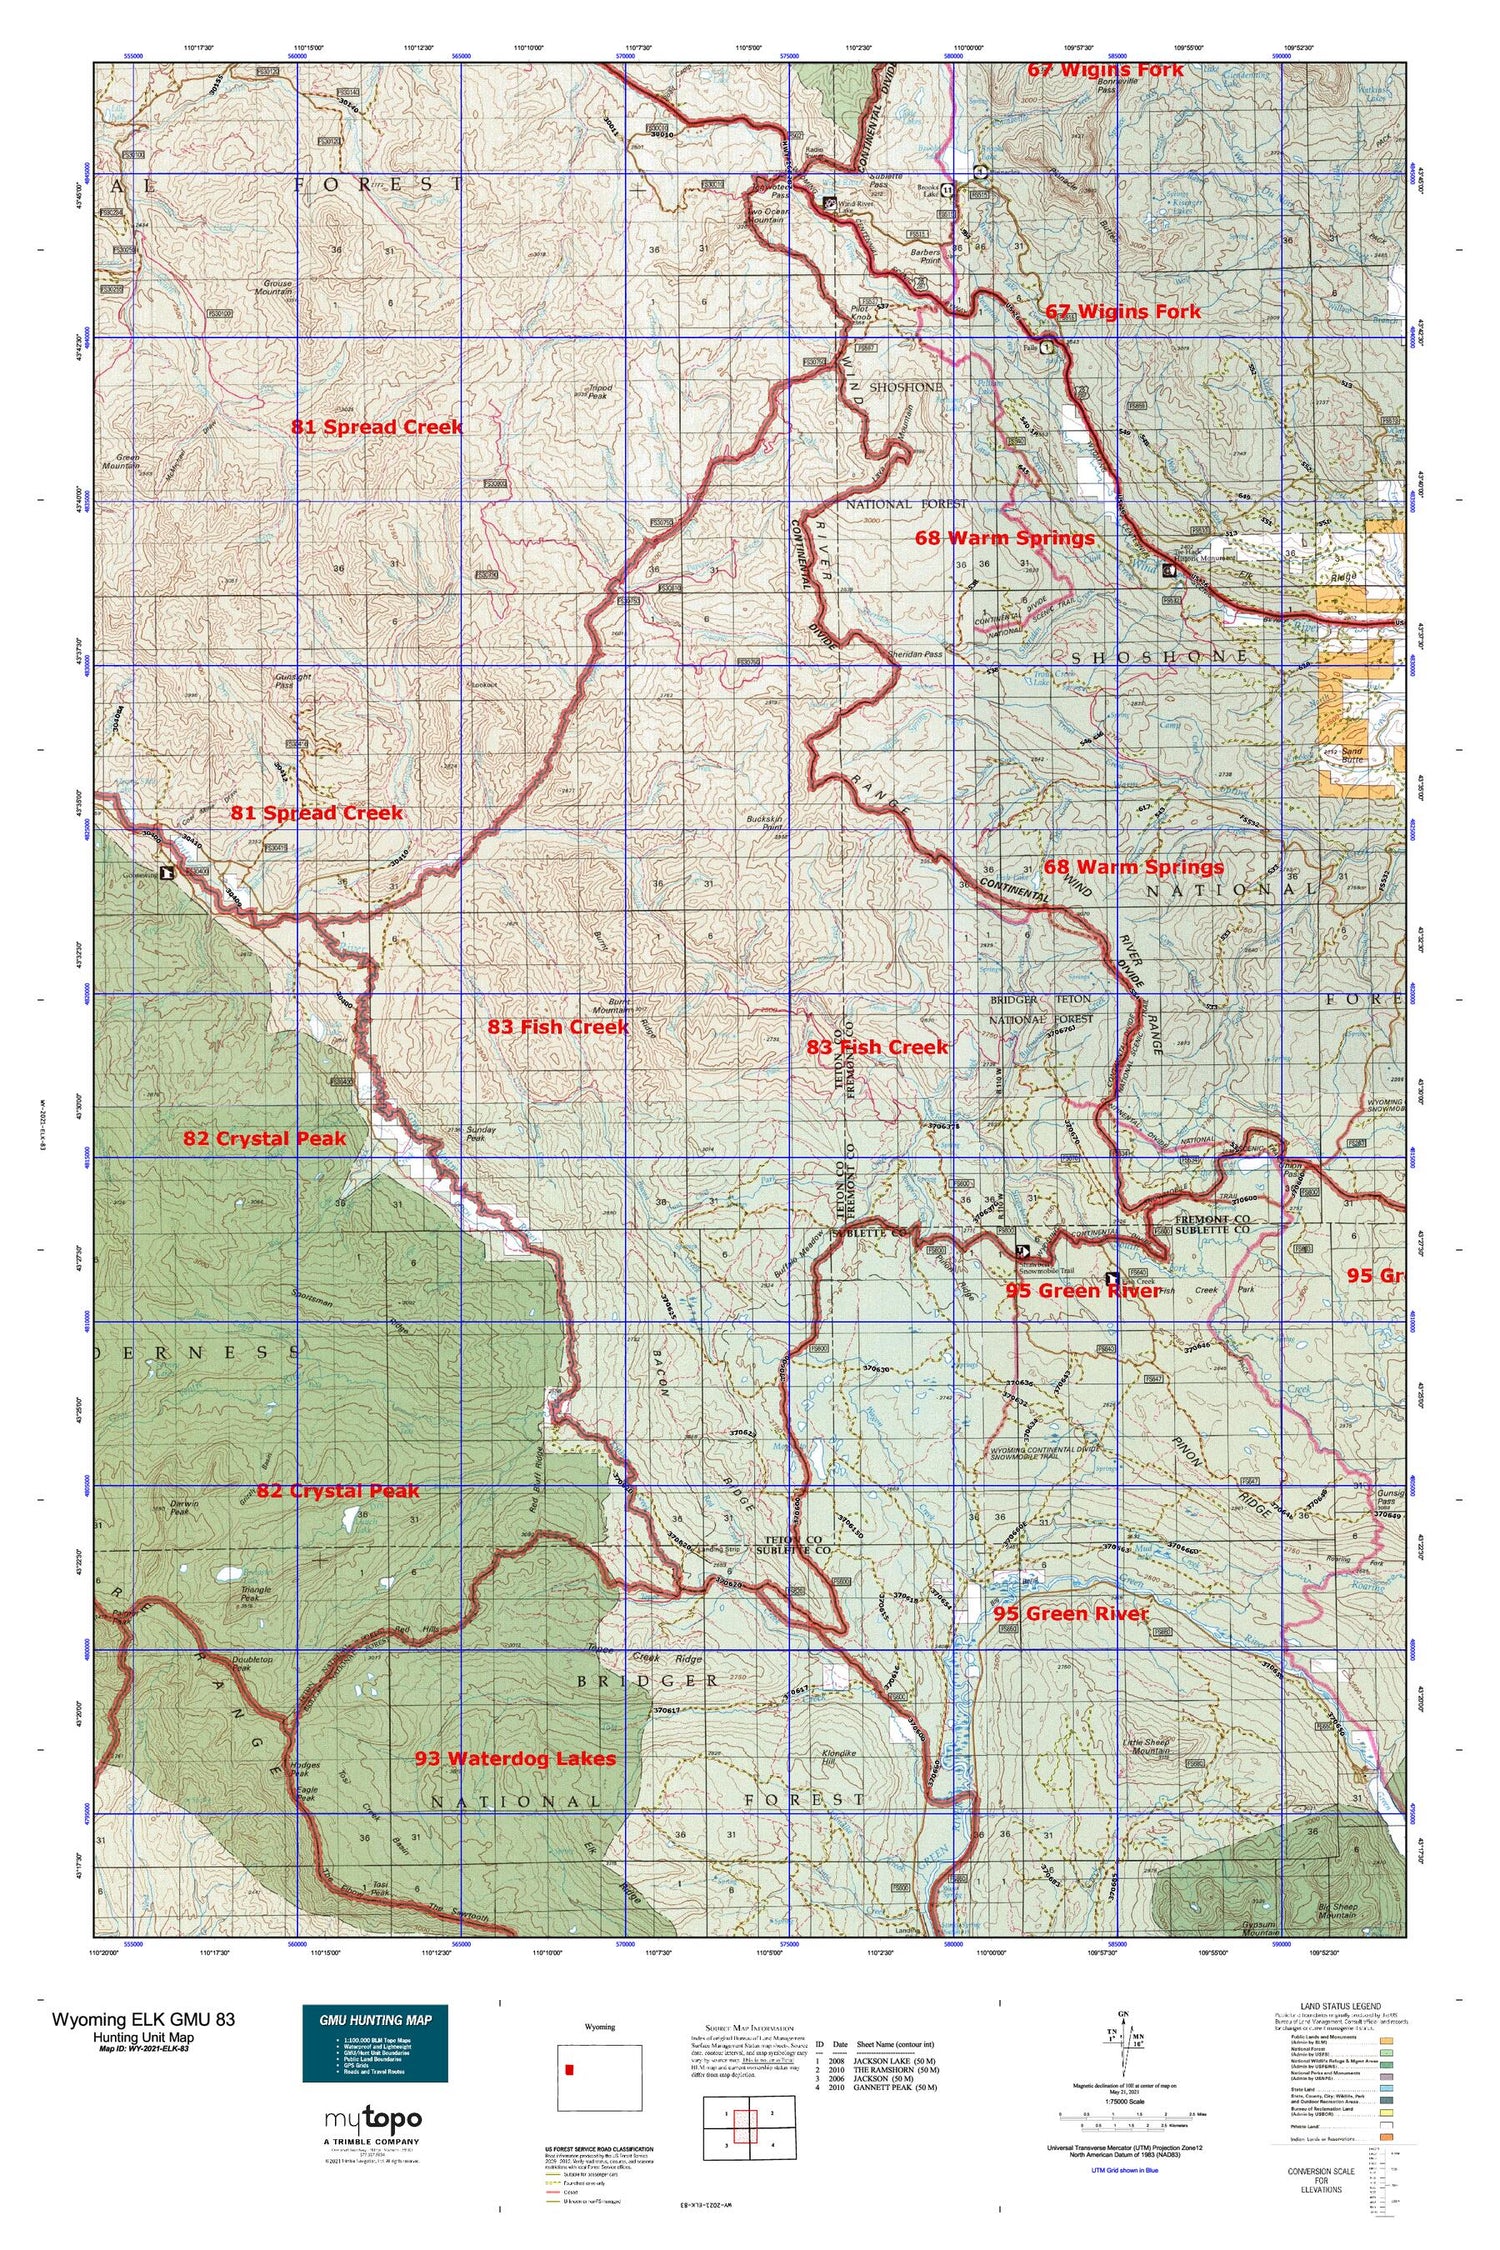 Wyoming Elk GMU 83 Map Image